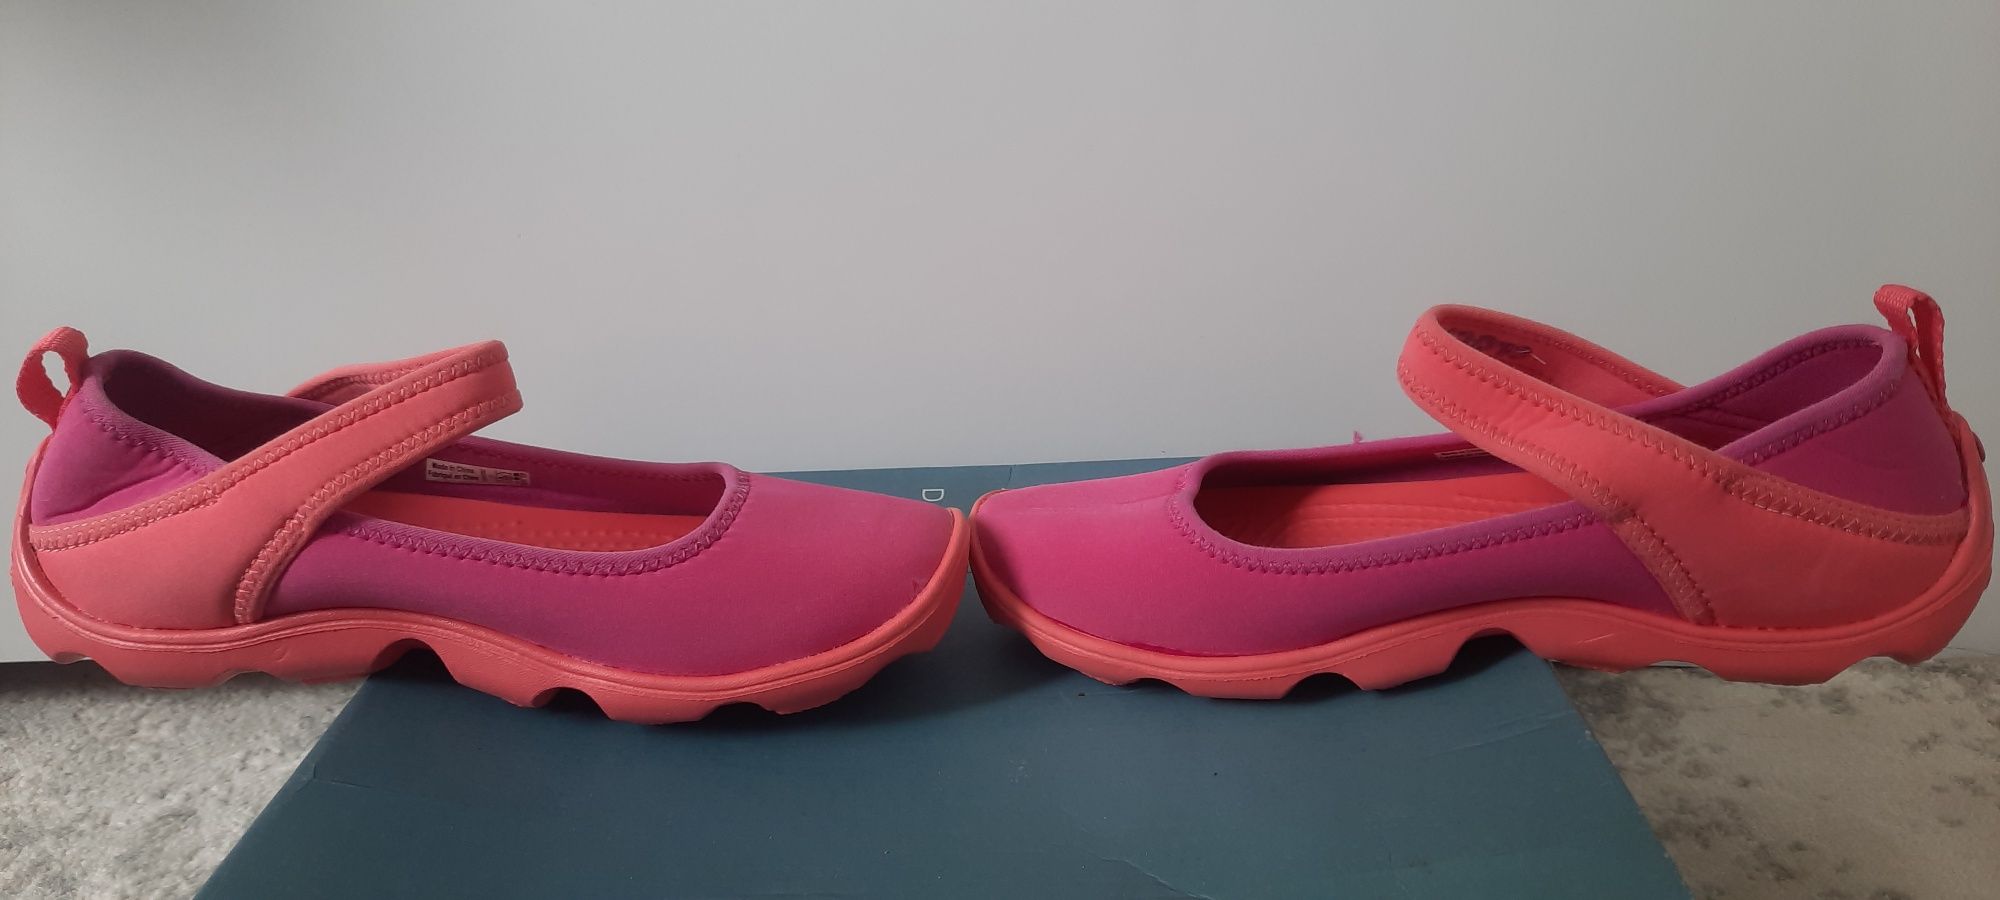 Crocs мокасины туфли балетки 32-33 розмір.